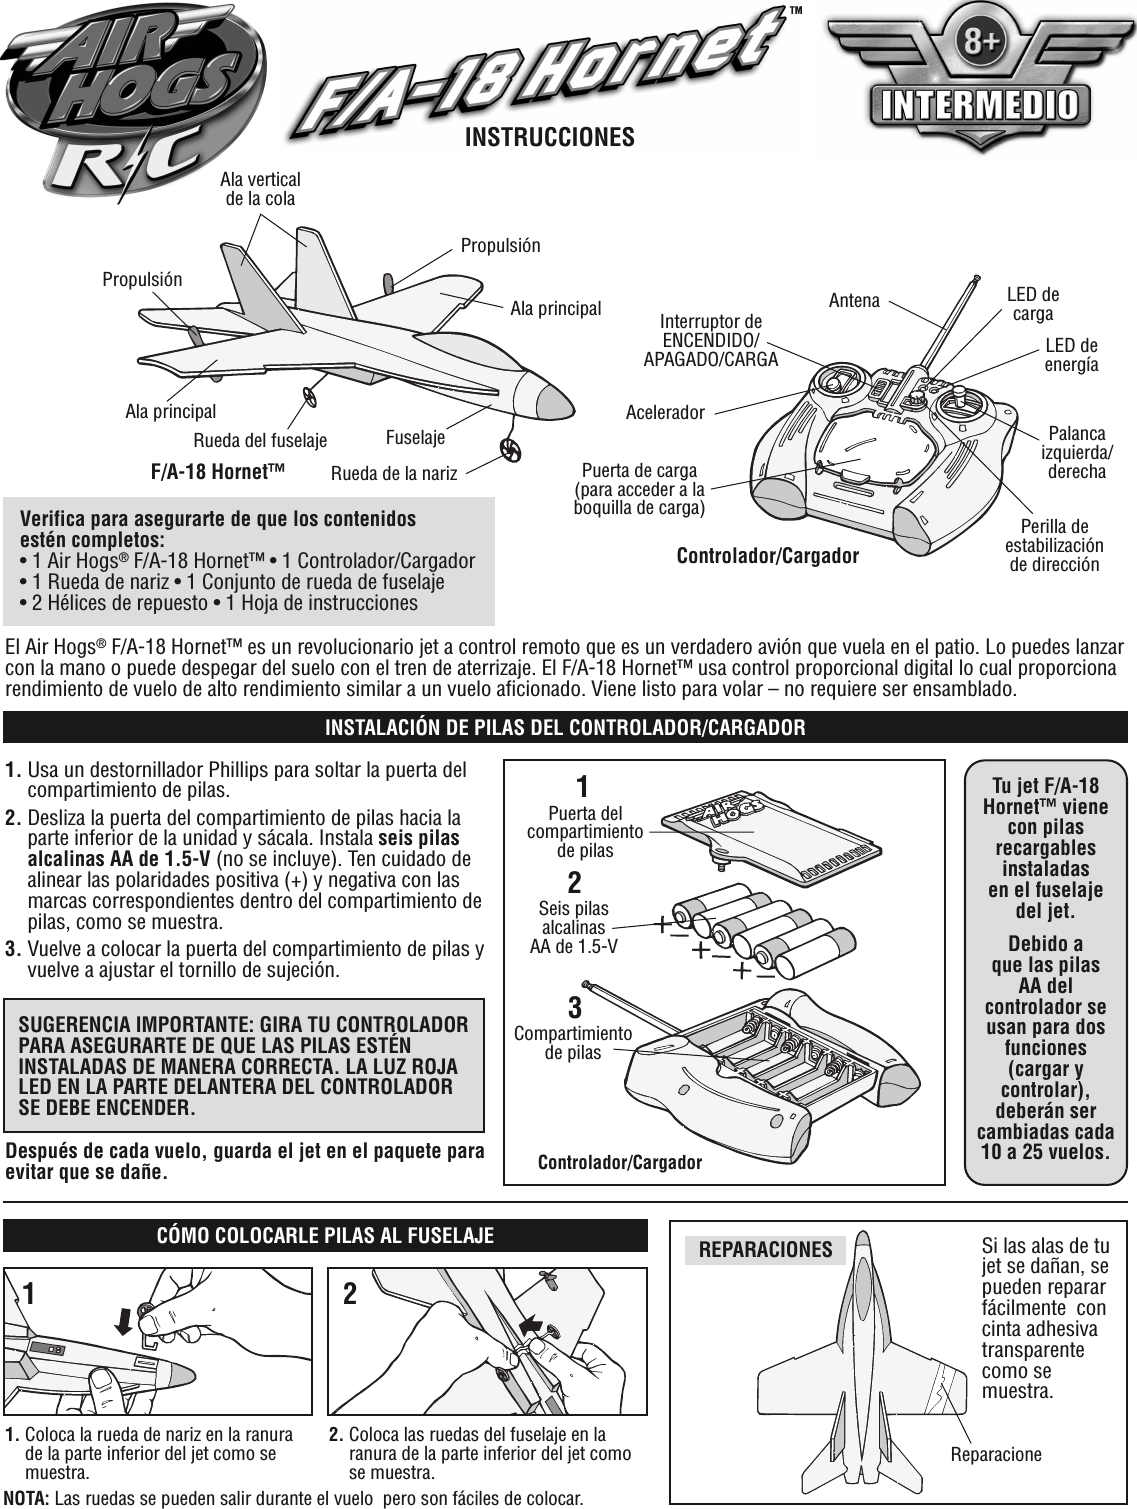 El Air Hogs®F/A-18 Hornet™ es un revolucionario jet a control remoto que es un verdadero avión que vuela en el patio. Lo puedes lanzarcon la mano o puede despegar del suelo con el tren de aterrizaje. El F/A-18 Hornet™ usa control proporcional digital lo cual proporcionarendimiento de vuelo de alto rendimiento similar a un vuelo aficionado. Viene listo para volar – no requiere ser ensamblado.Controlador/CargadorAntenaInterruptor deENCENDIDO/APAGADO/CARGAAceleradorPuerta de carga(para acceder a laboquilla de carga)LED decargaLED deenergíaPalancaizquierda/derechaPerilla deestabilizaciónde direcciónAla principalPropulsiónF/A-18 Hornet™PropulsiónRueda del fuselajeAla principalRueda de la narizFuselajeVerifica para asegurarte de que los contenidosestén completos:• 1 Air Hogs®F/A-18 Hornet™ • 1 Controlador/Cargador• 1 Rueda de nariz • 1 Conjunto de rueda de fuselaje• 2 Hélices de repuesto • 1 Hoja de instrucciones1. Usa un destornillador Phillips para soltar la puerta delcompartimiento de pilas.2. Desliza la puerta del compartimiento de pilas hacia laparte inferior de la unidad y sácala. Instala seis pilasalcalinas AA de 1.5-V (no se incluye). Ten cuidado dealinear las polaridades positiva (+) y negativa con lasmarcas correspondientes dentro del compartimiento depilas, como se muestra.3. Vuelve a colocar la puerta del compartimiento de pilas yvuelve a ajustar el tornillo de sujeción.21Controlador/CargadorPuerta delcompartimientode pilasSeis pilasalcalinasAA de 1.5-VSUGERENCIA IMPORTANTE: GIRA TU CONTROLADORPARA ASEGURARTE DE QUE LAS PILAS ESTÉNINSTALADAS DE MANERA CORRECTA. LA LUZ ROJALED EN LA PARTE DELANTERA DEL CONTROLADORSE DEBE ENCENDER.Tu jet F/A-18Hornet™ vienecon pilasrecargablesinstaladasen el fuselajedel jet.Debido aque las pilasAA delcontrolador seusan para dosfunciones(cargar ycontrolar),deberán sercambiadas cada10 a 25 vuelos.Después de cada vuelo, guarda el jet en el paquete paraevitar que se dañe.REPARACIONESINSTALACIÓN DE PILAS DEL CONTROLADOR/CARGADORSi las alas de tujet se dañan, sepueden repararfácilmente concinta adhesivatransparentecomo semuestra.CÓMO COLOCARLE PILAS AL FUSELAJEReparacione1. Coloca la rueda de nariz en la ranurade la parte inferior del jet como semuestra.2. Coloca las ruedas del fuselaje en laranura de la parte inferior del jet comose muestra.12INSTRUCCIONESTMNOTA: Las ruedas se pueden salir durante el vuelo pero son fáciles de colocar.3Compartimientode pilasAla verticalde la cola